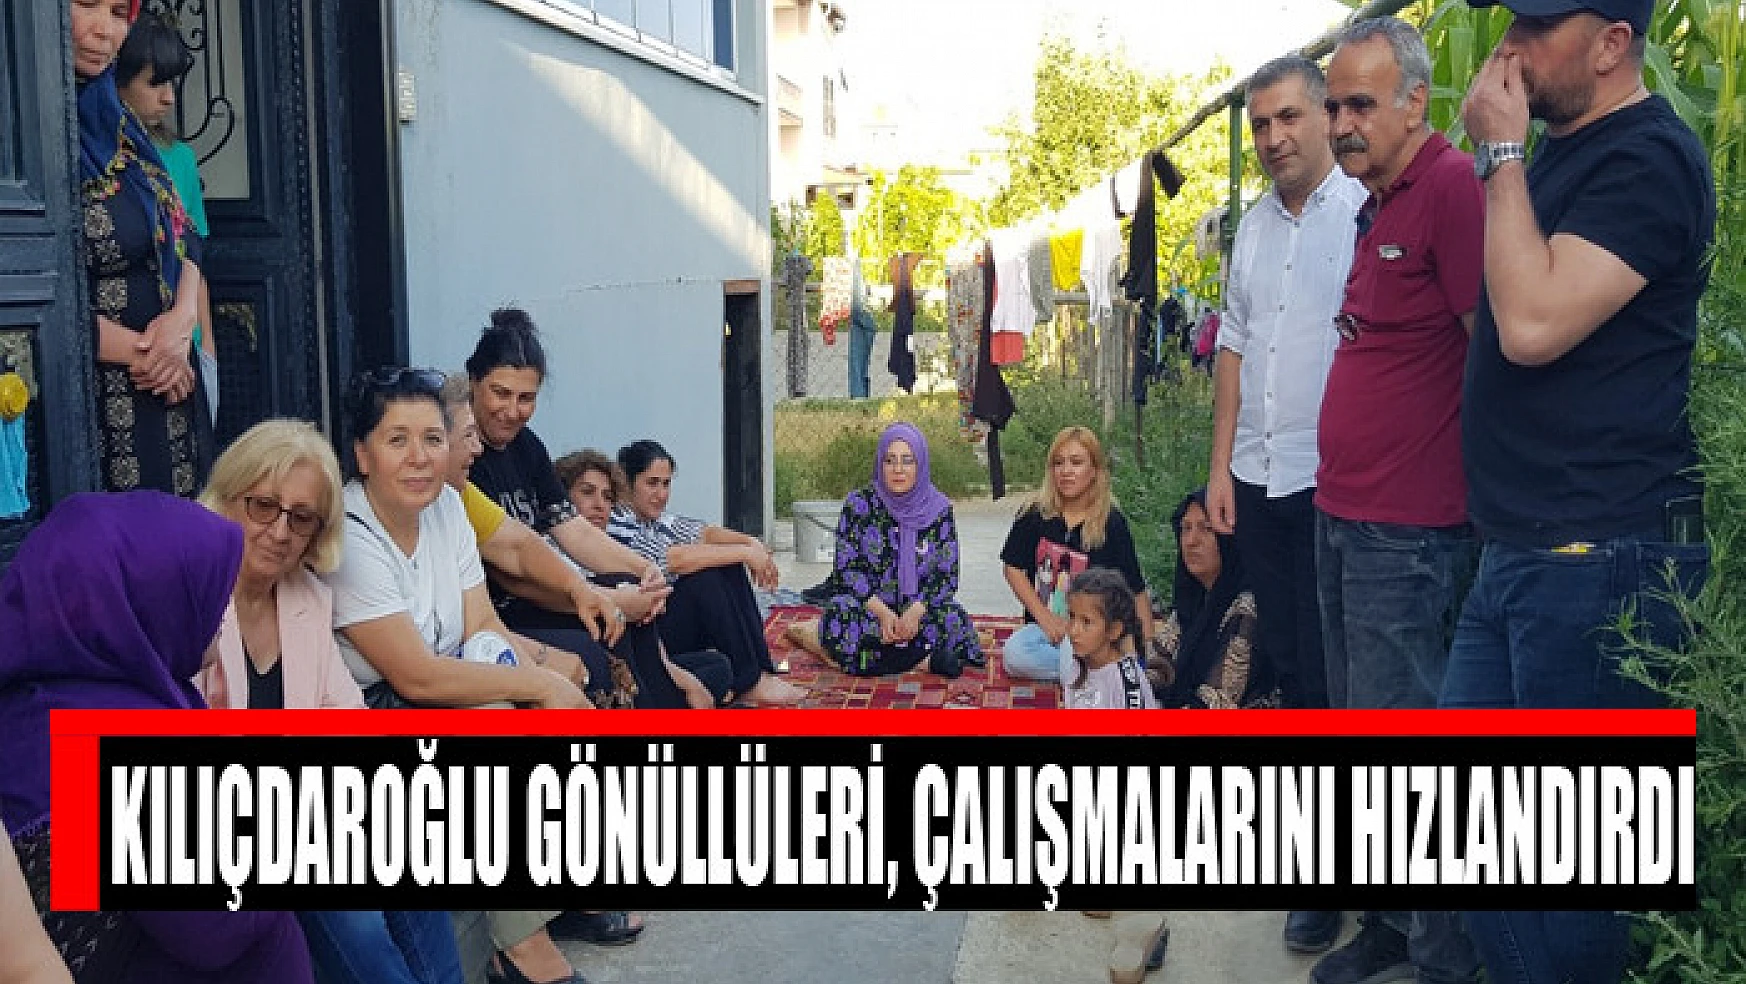 Kılıçdaroğlu Gönüllüleri, çalışmalarını hızlandırdı